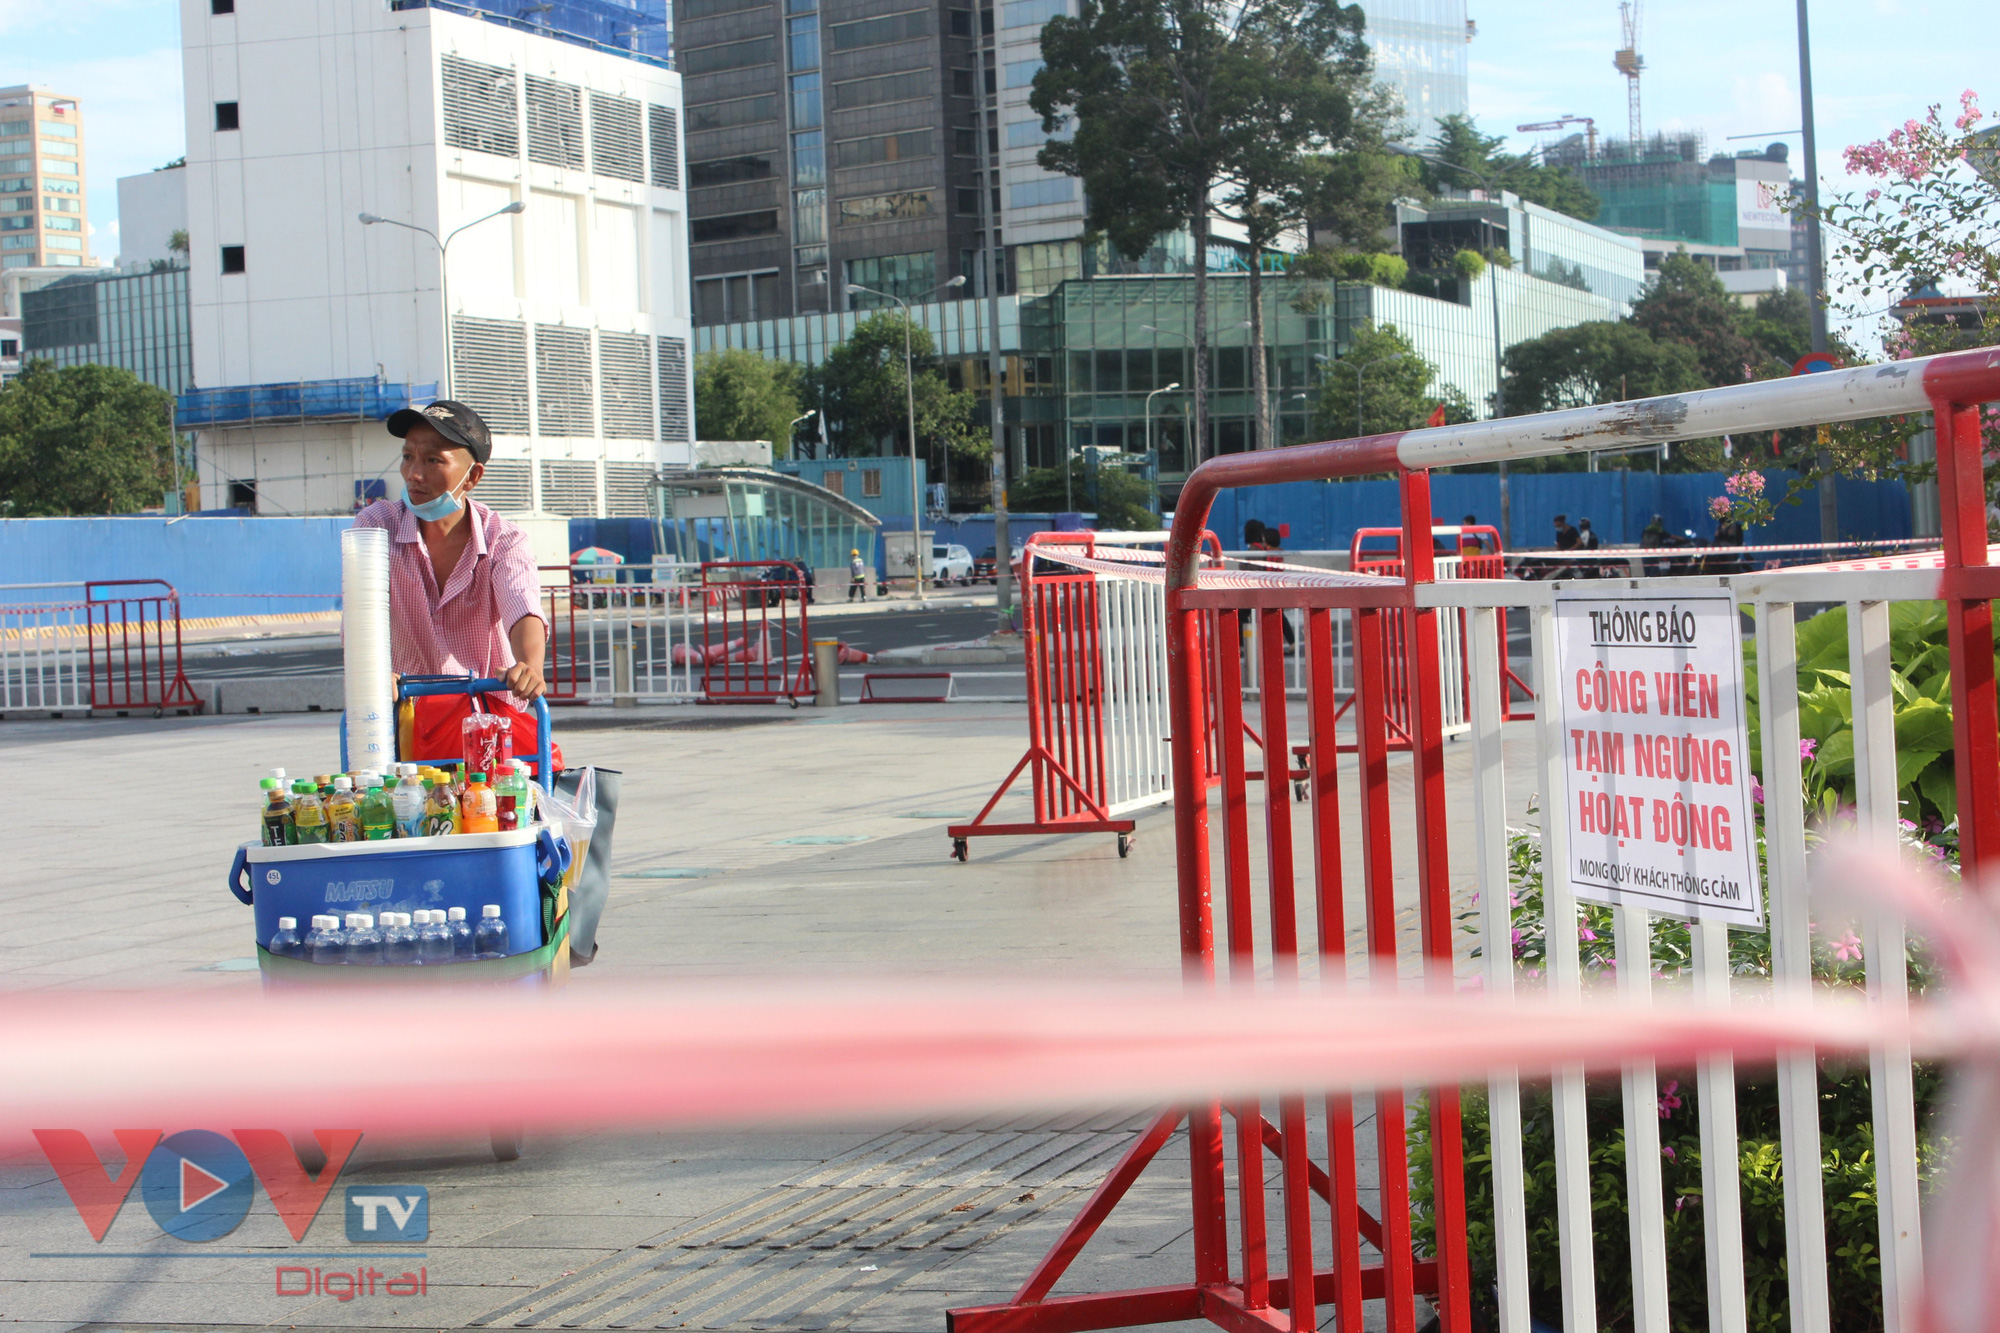 Không hoạt động du lịch, phố đi bộ Nguyễn Huệ không còn cảnh tụ tập đông người khiến những gánh hàng rong chật vật mưu sinh trong những ngày giãn cách xã hội